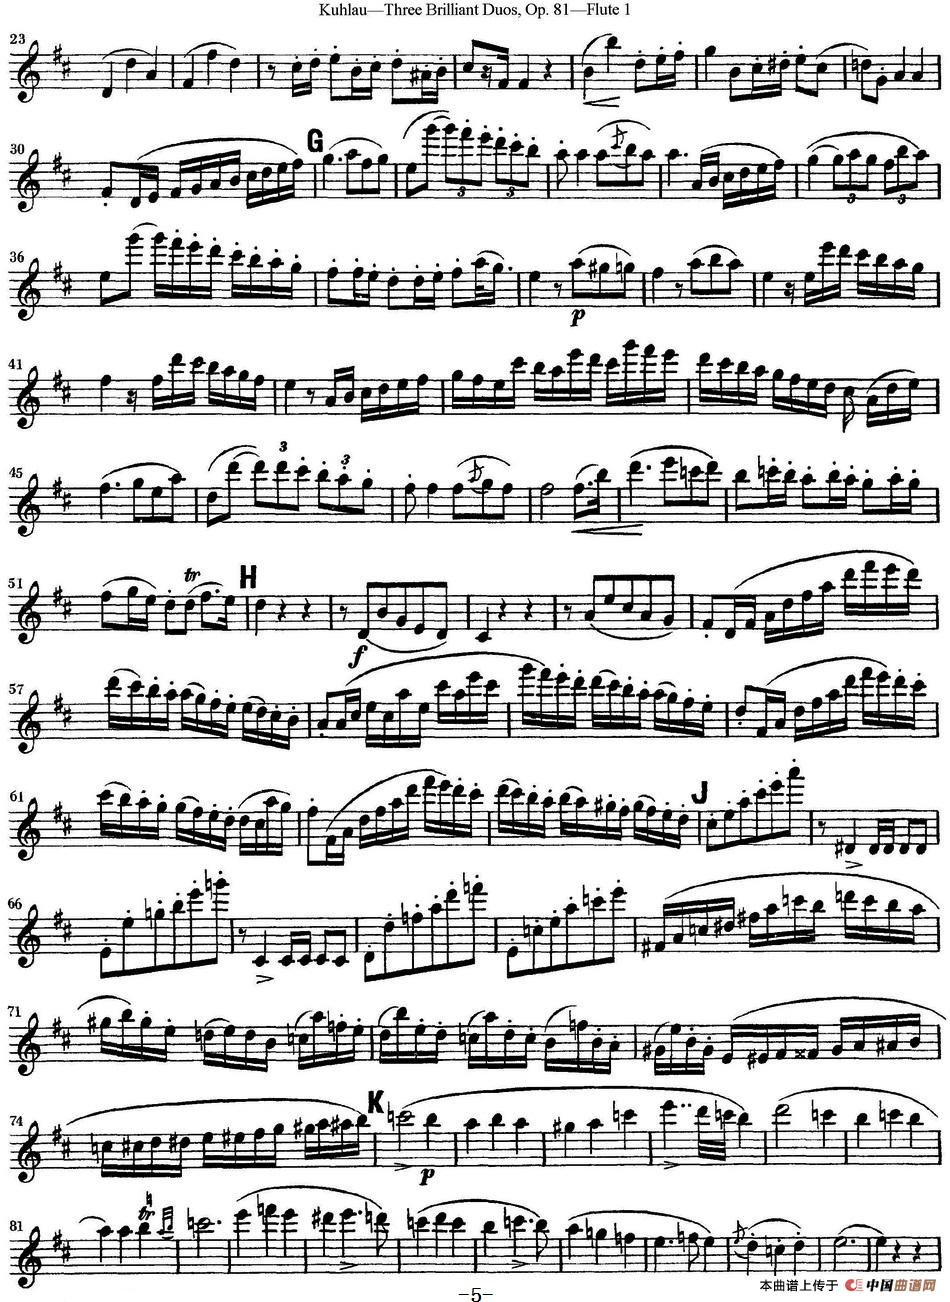 库劳长笛二重奏练习三段OP.81——Flute 1（NO.1）